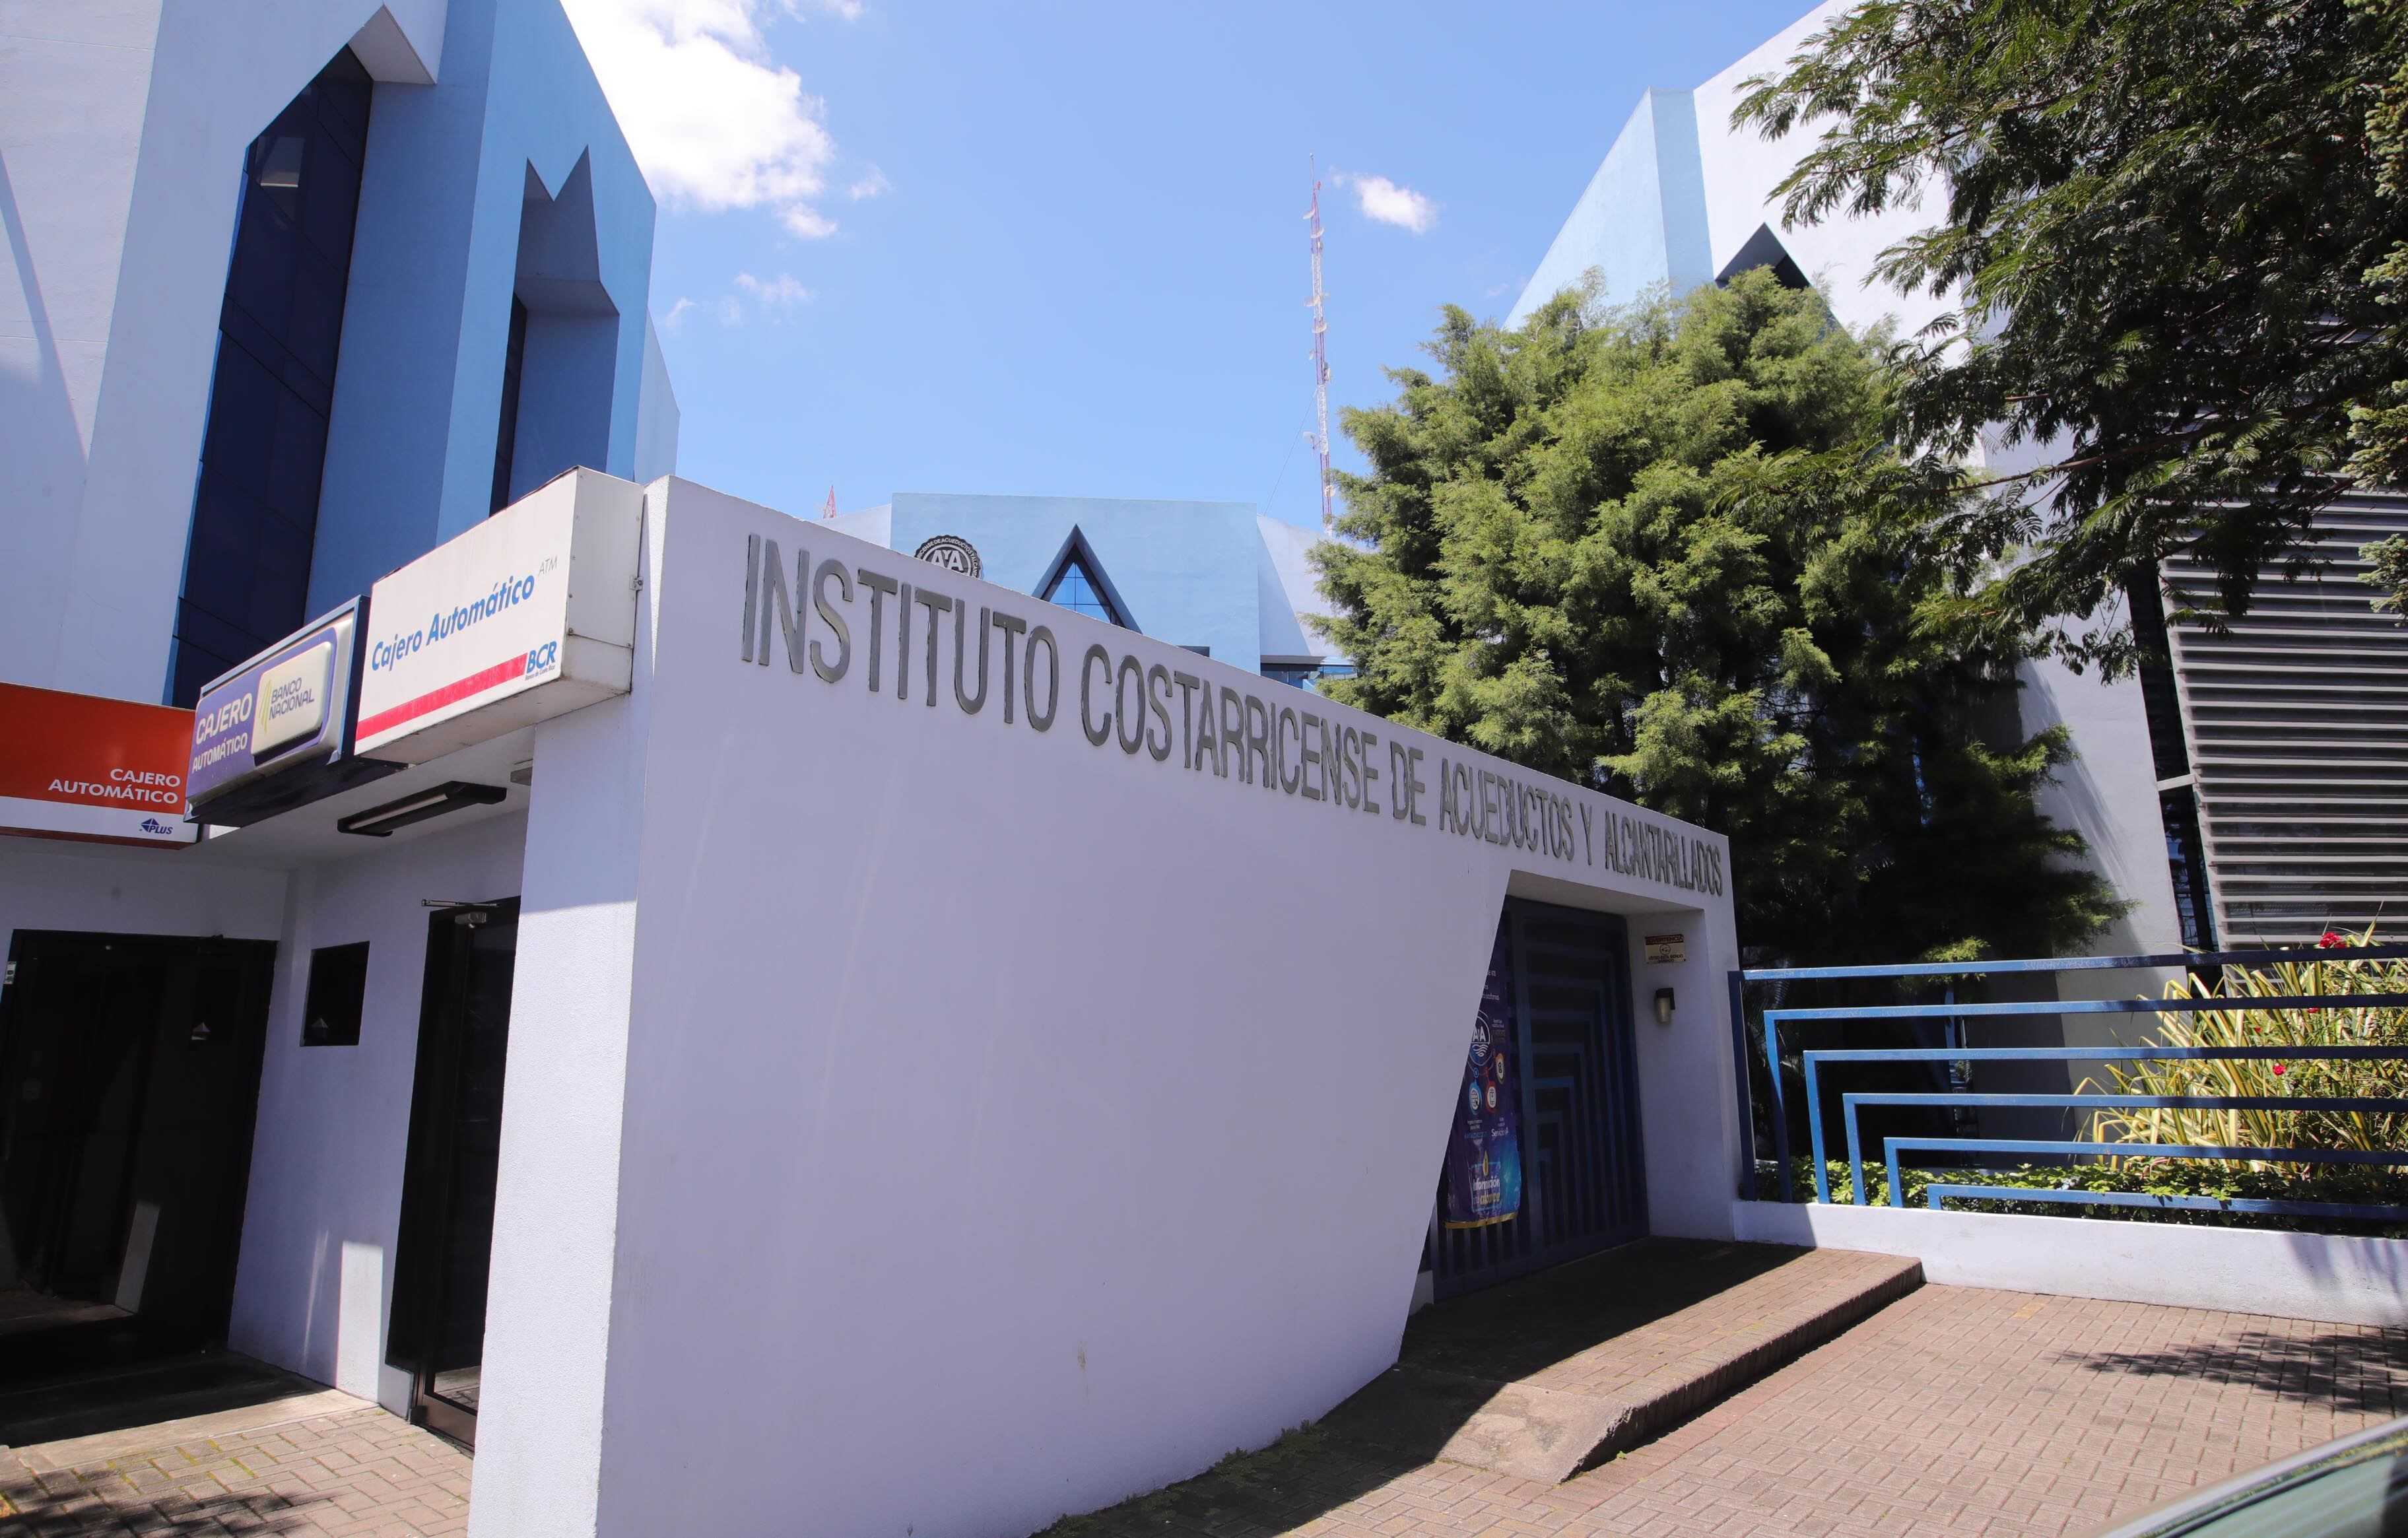 La nueva intervención en el Instituto Costarricense de Acueductos y Alcantarillados (AyA) ocurre en vísperas de cumplirse la mitad del período presidencial.